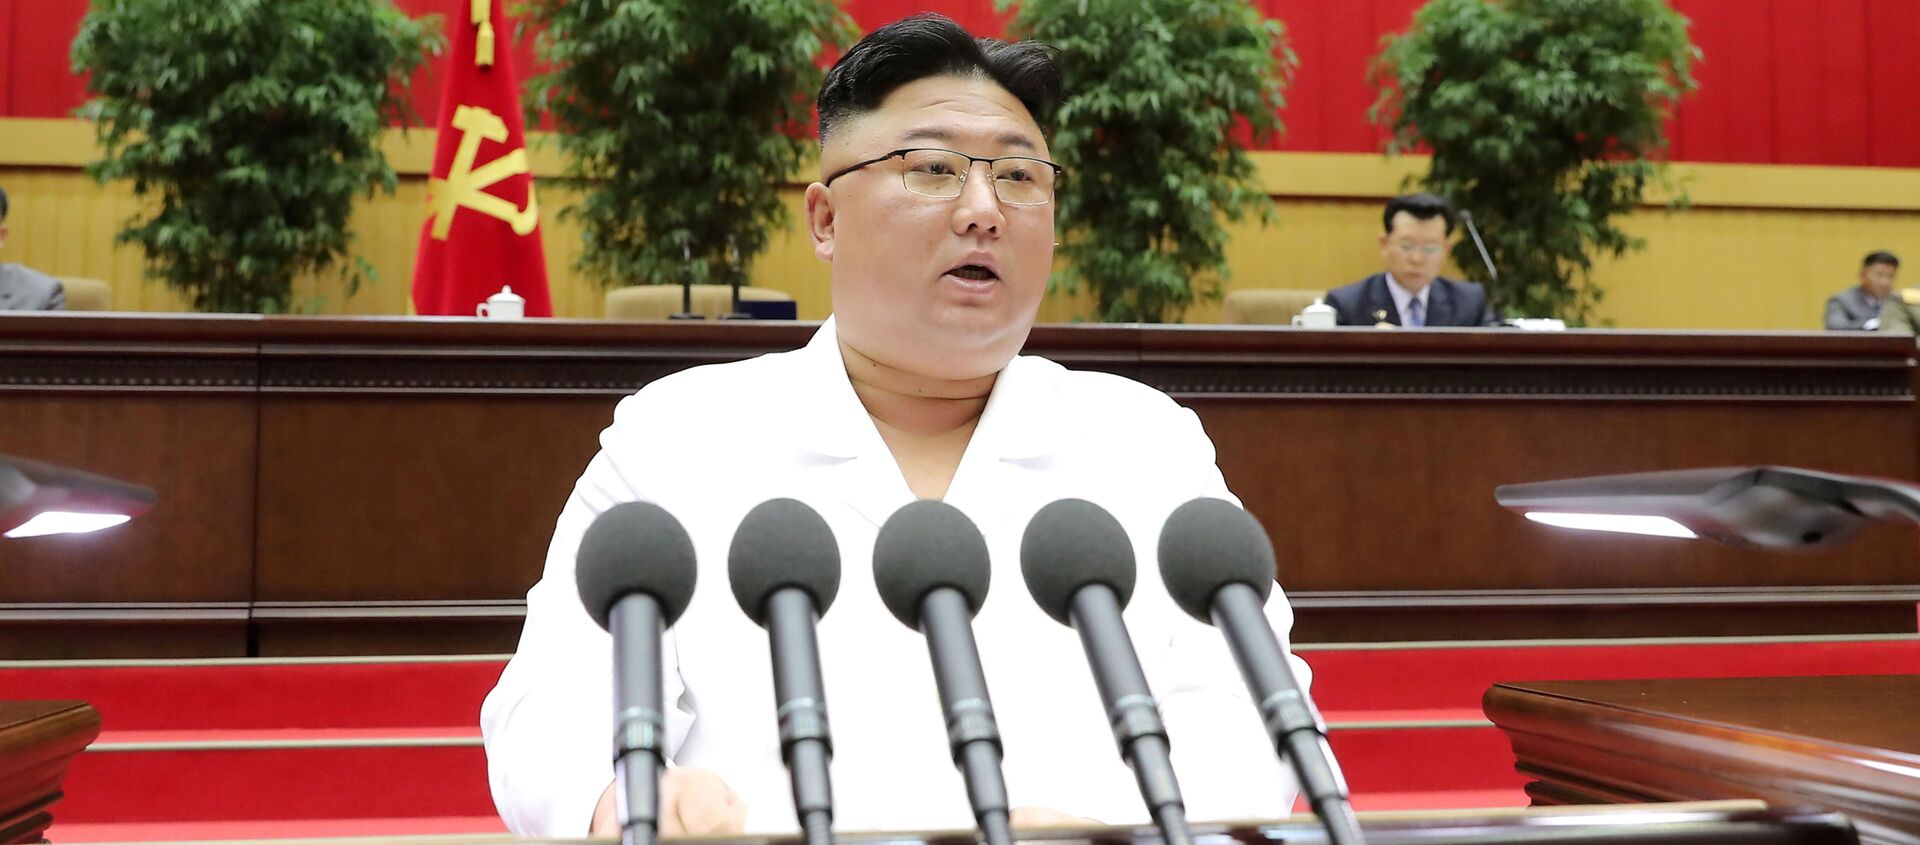 Nhà lãnh đạo Triều Tiên Kim Jong Un phát biểu trước hội nghị các bí thư chi bộ của Đảng Công nhân cầm quyền ở Bình Nhưỡng, trong bức ảnh không ghi ngày tháng được hãng thông tấn trung ương Triều Tiên (KCNA) công bố ngày 7/4/2021. - Sputnik Việt Nam, 1920, 23.09.2021